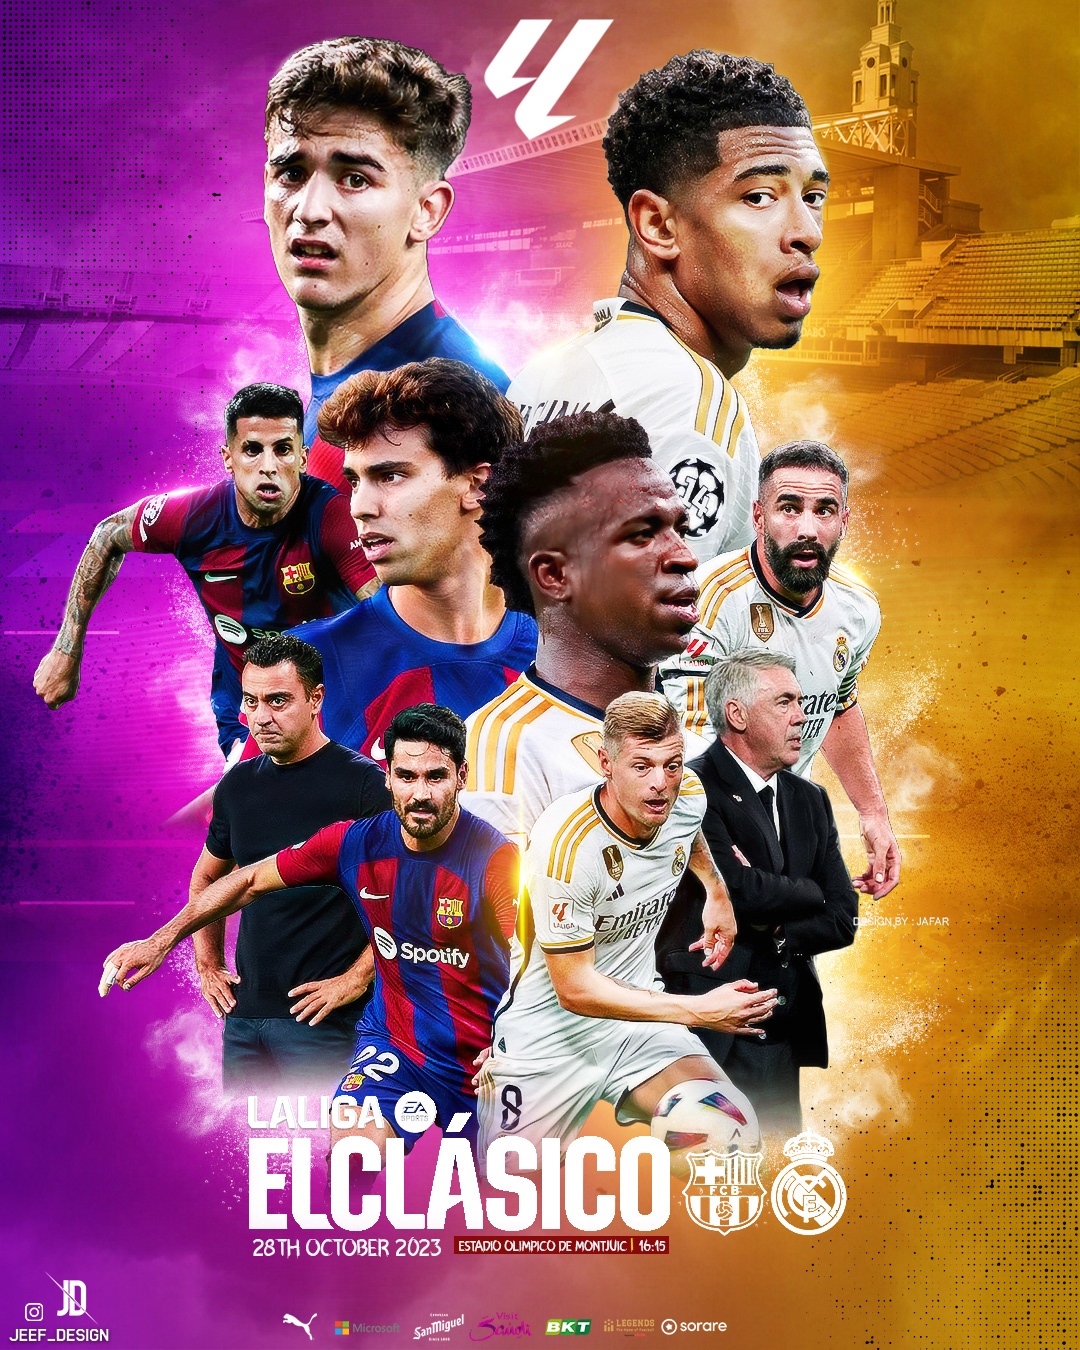 Real Madrid graphics wallpaper poster design sport El clasico wallpaper FC Barcelona champions league vinicius Bellingham la liga football